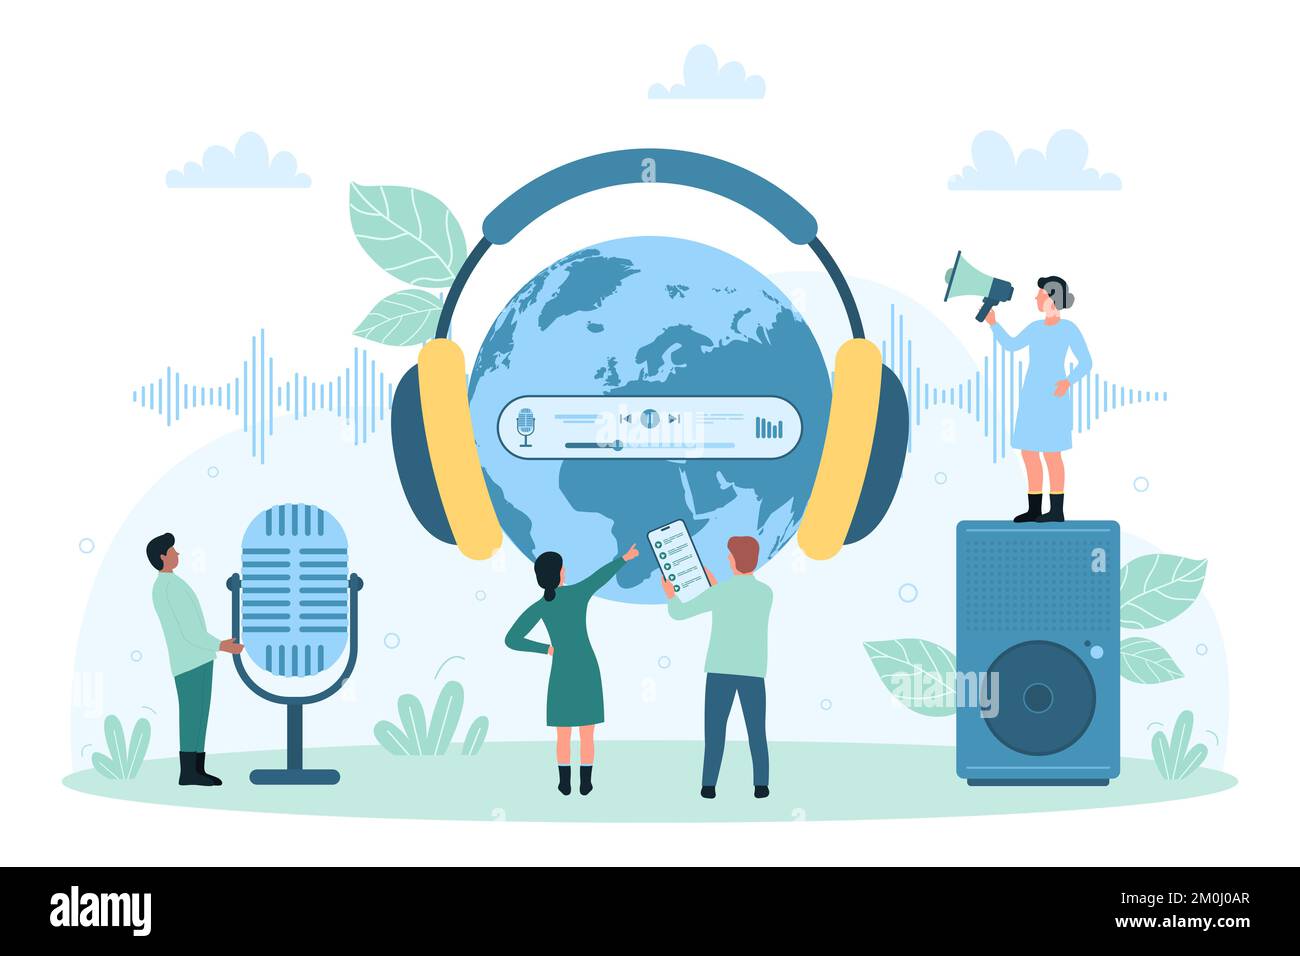 Globale Telekommunikation, Tonaufzeichnungsvektordarstellung. Kleine Cartoon-Menschen, die mit Kopfhörern auf die Erde zeigen, verwenden Lautsprecher und Mikrofon, um Radio-Podcasts, Musik und Stimme aufzunehmen Stock Vektor